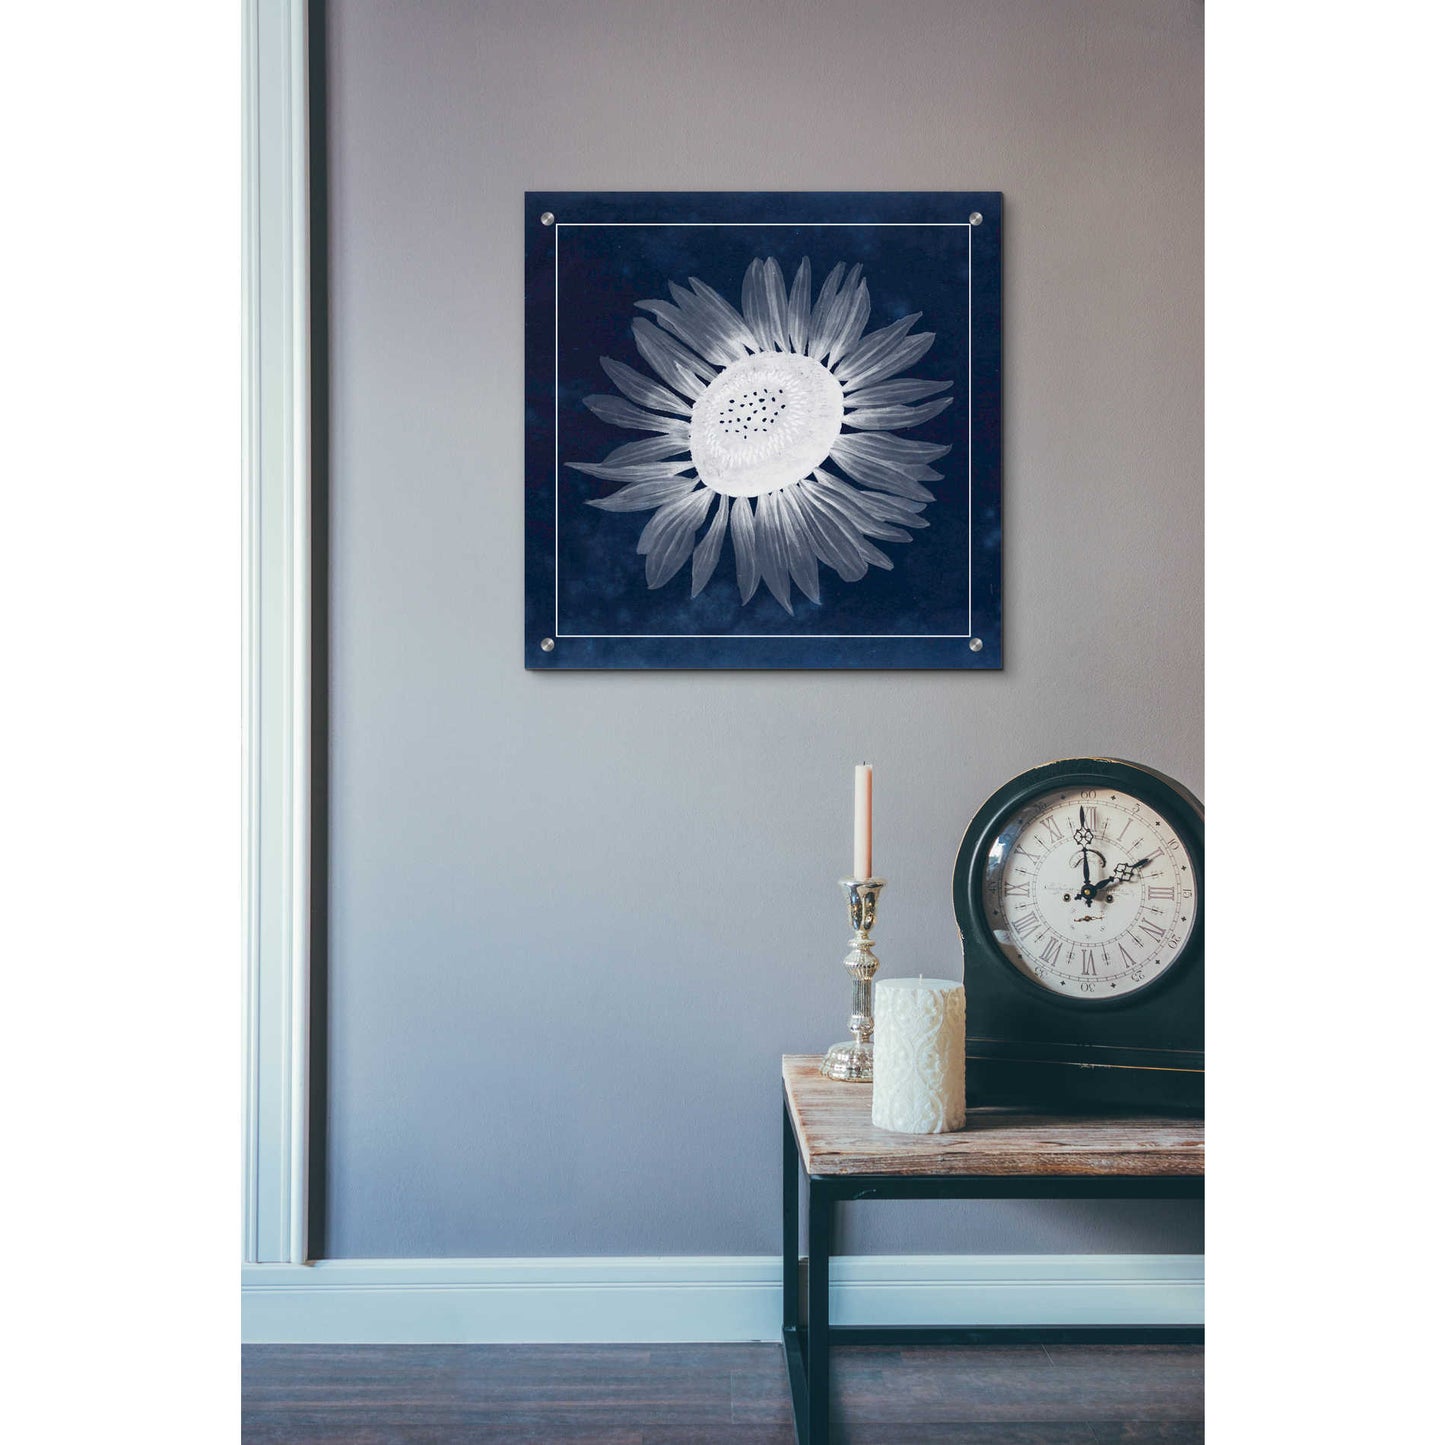 Epic Art 'Moon Flower II' by Grace Popp, Acrylic Wall Glass,24x24